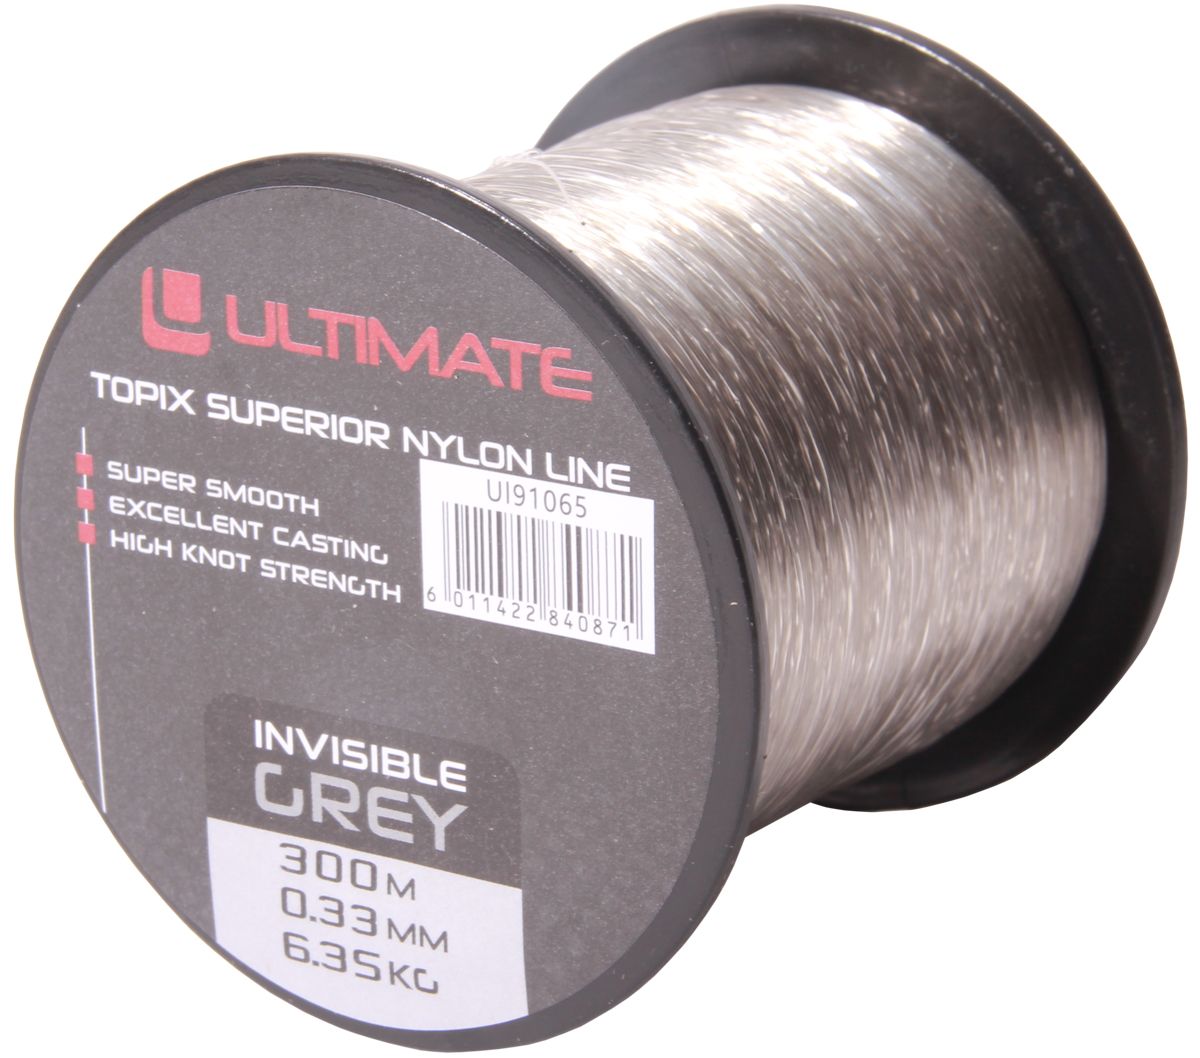 Ultimate Topix nylon invisible grey 300m 0,33mm 6,35kg